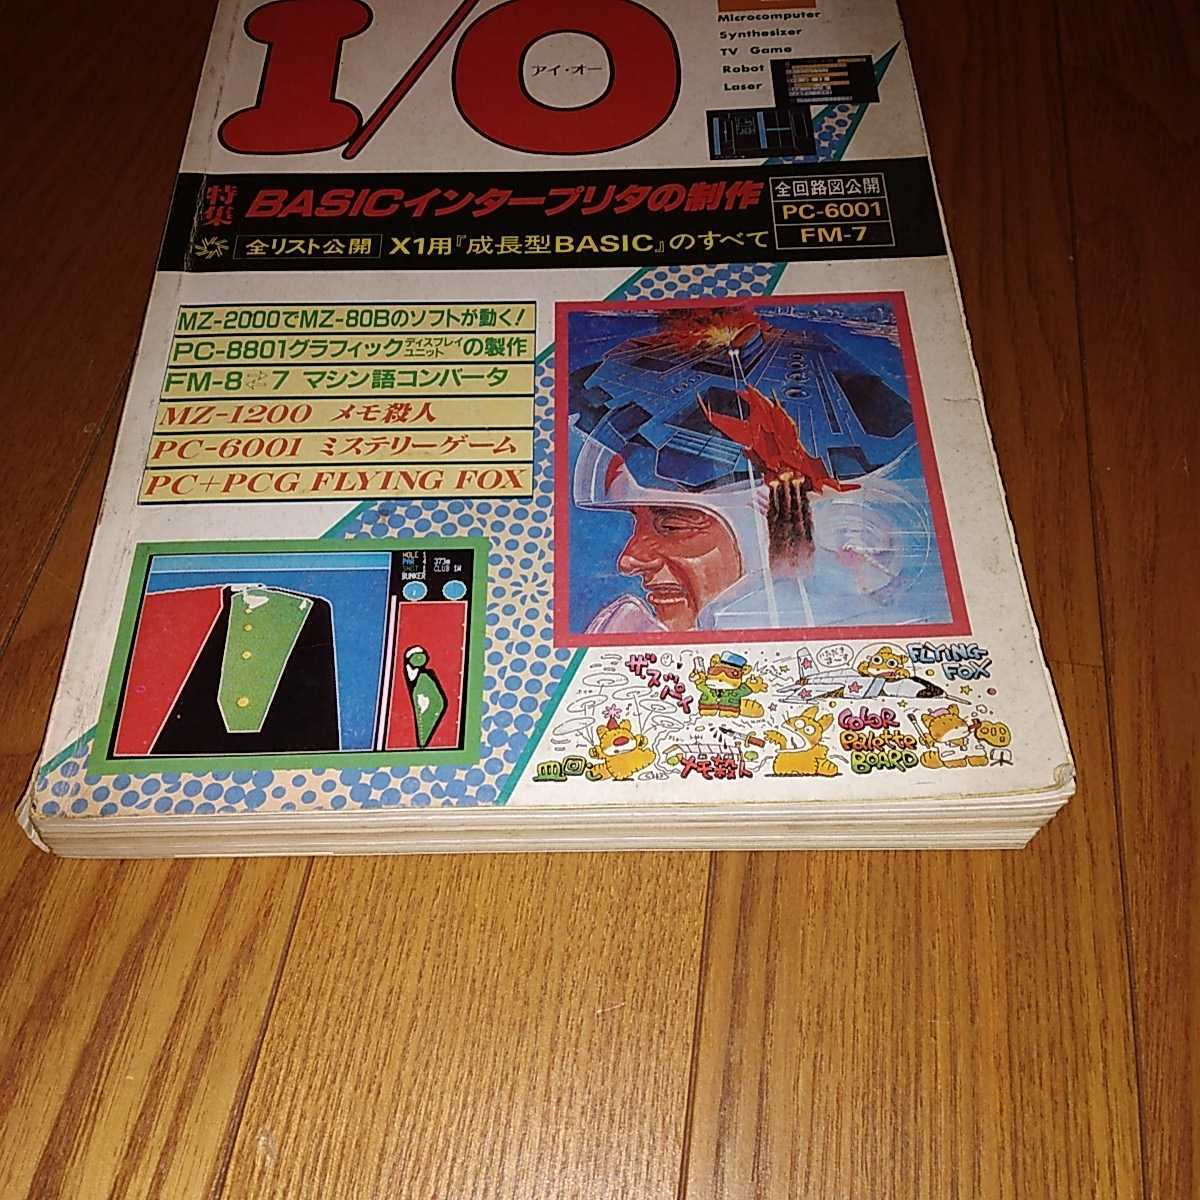  I o-1983 год 4 месяц номер ]I/O инженерия фирма хобби electronics. информация журнал 